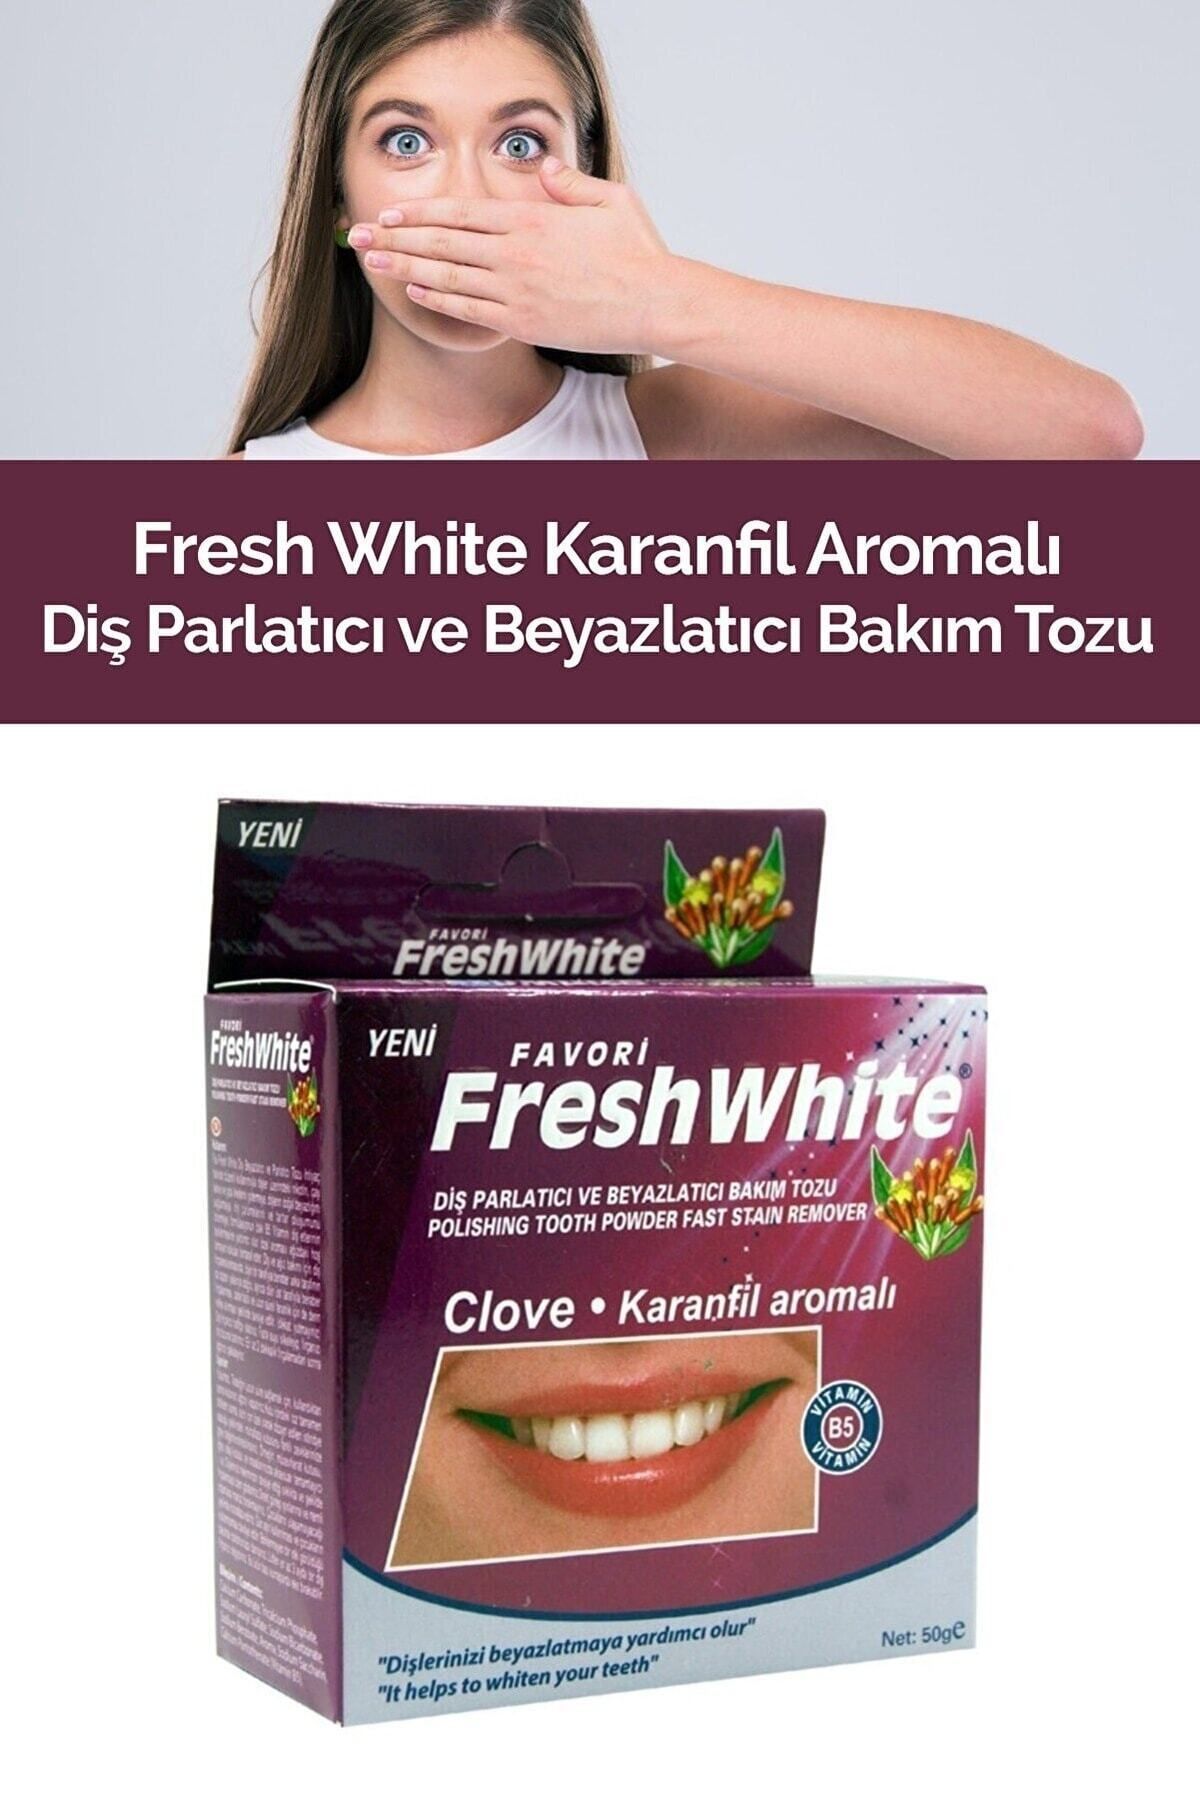 Fresh White Diş Parlatıcı Ve Beyazlatıcı Bakım Tozu 50g - Karanfil Aromalı